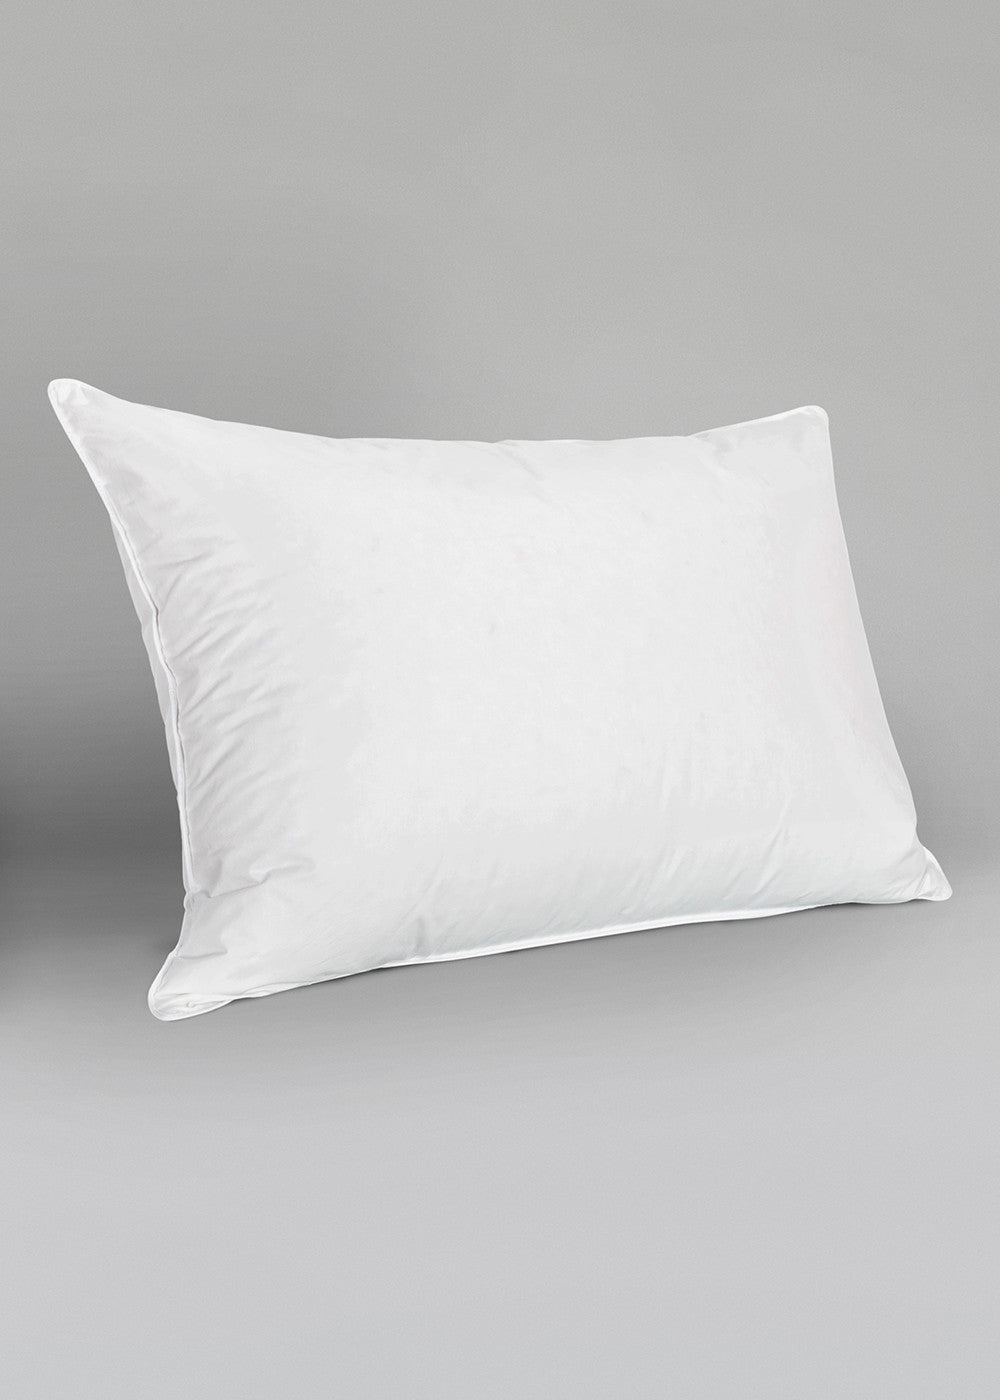 Saona Bi comfort Pillow-1